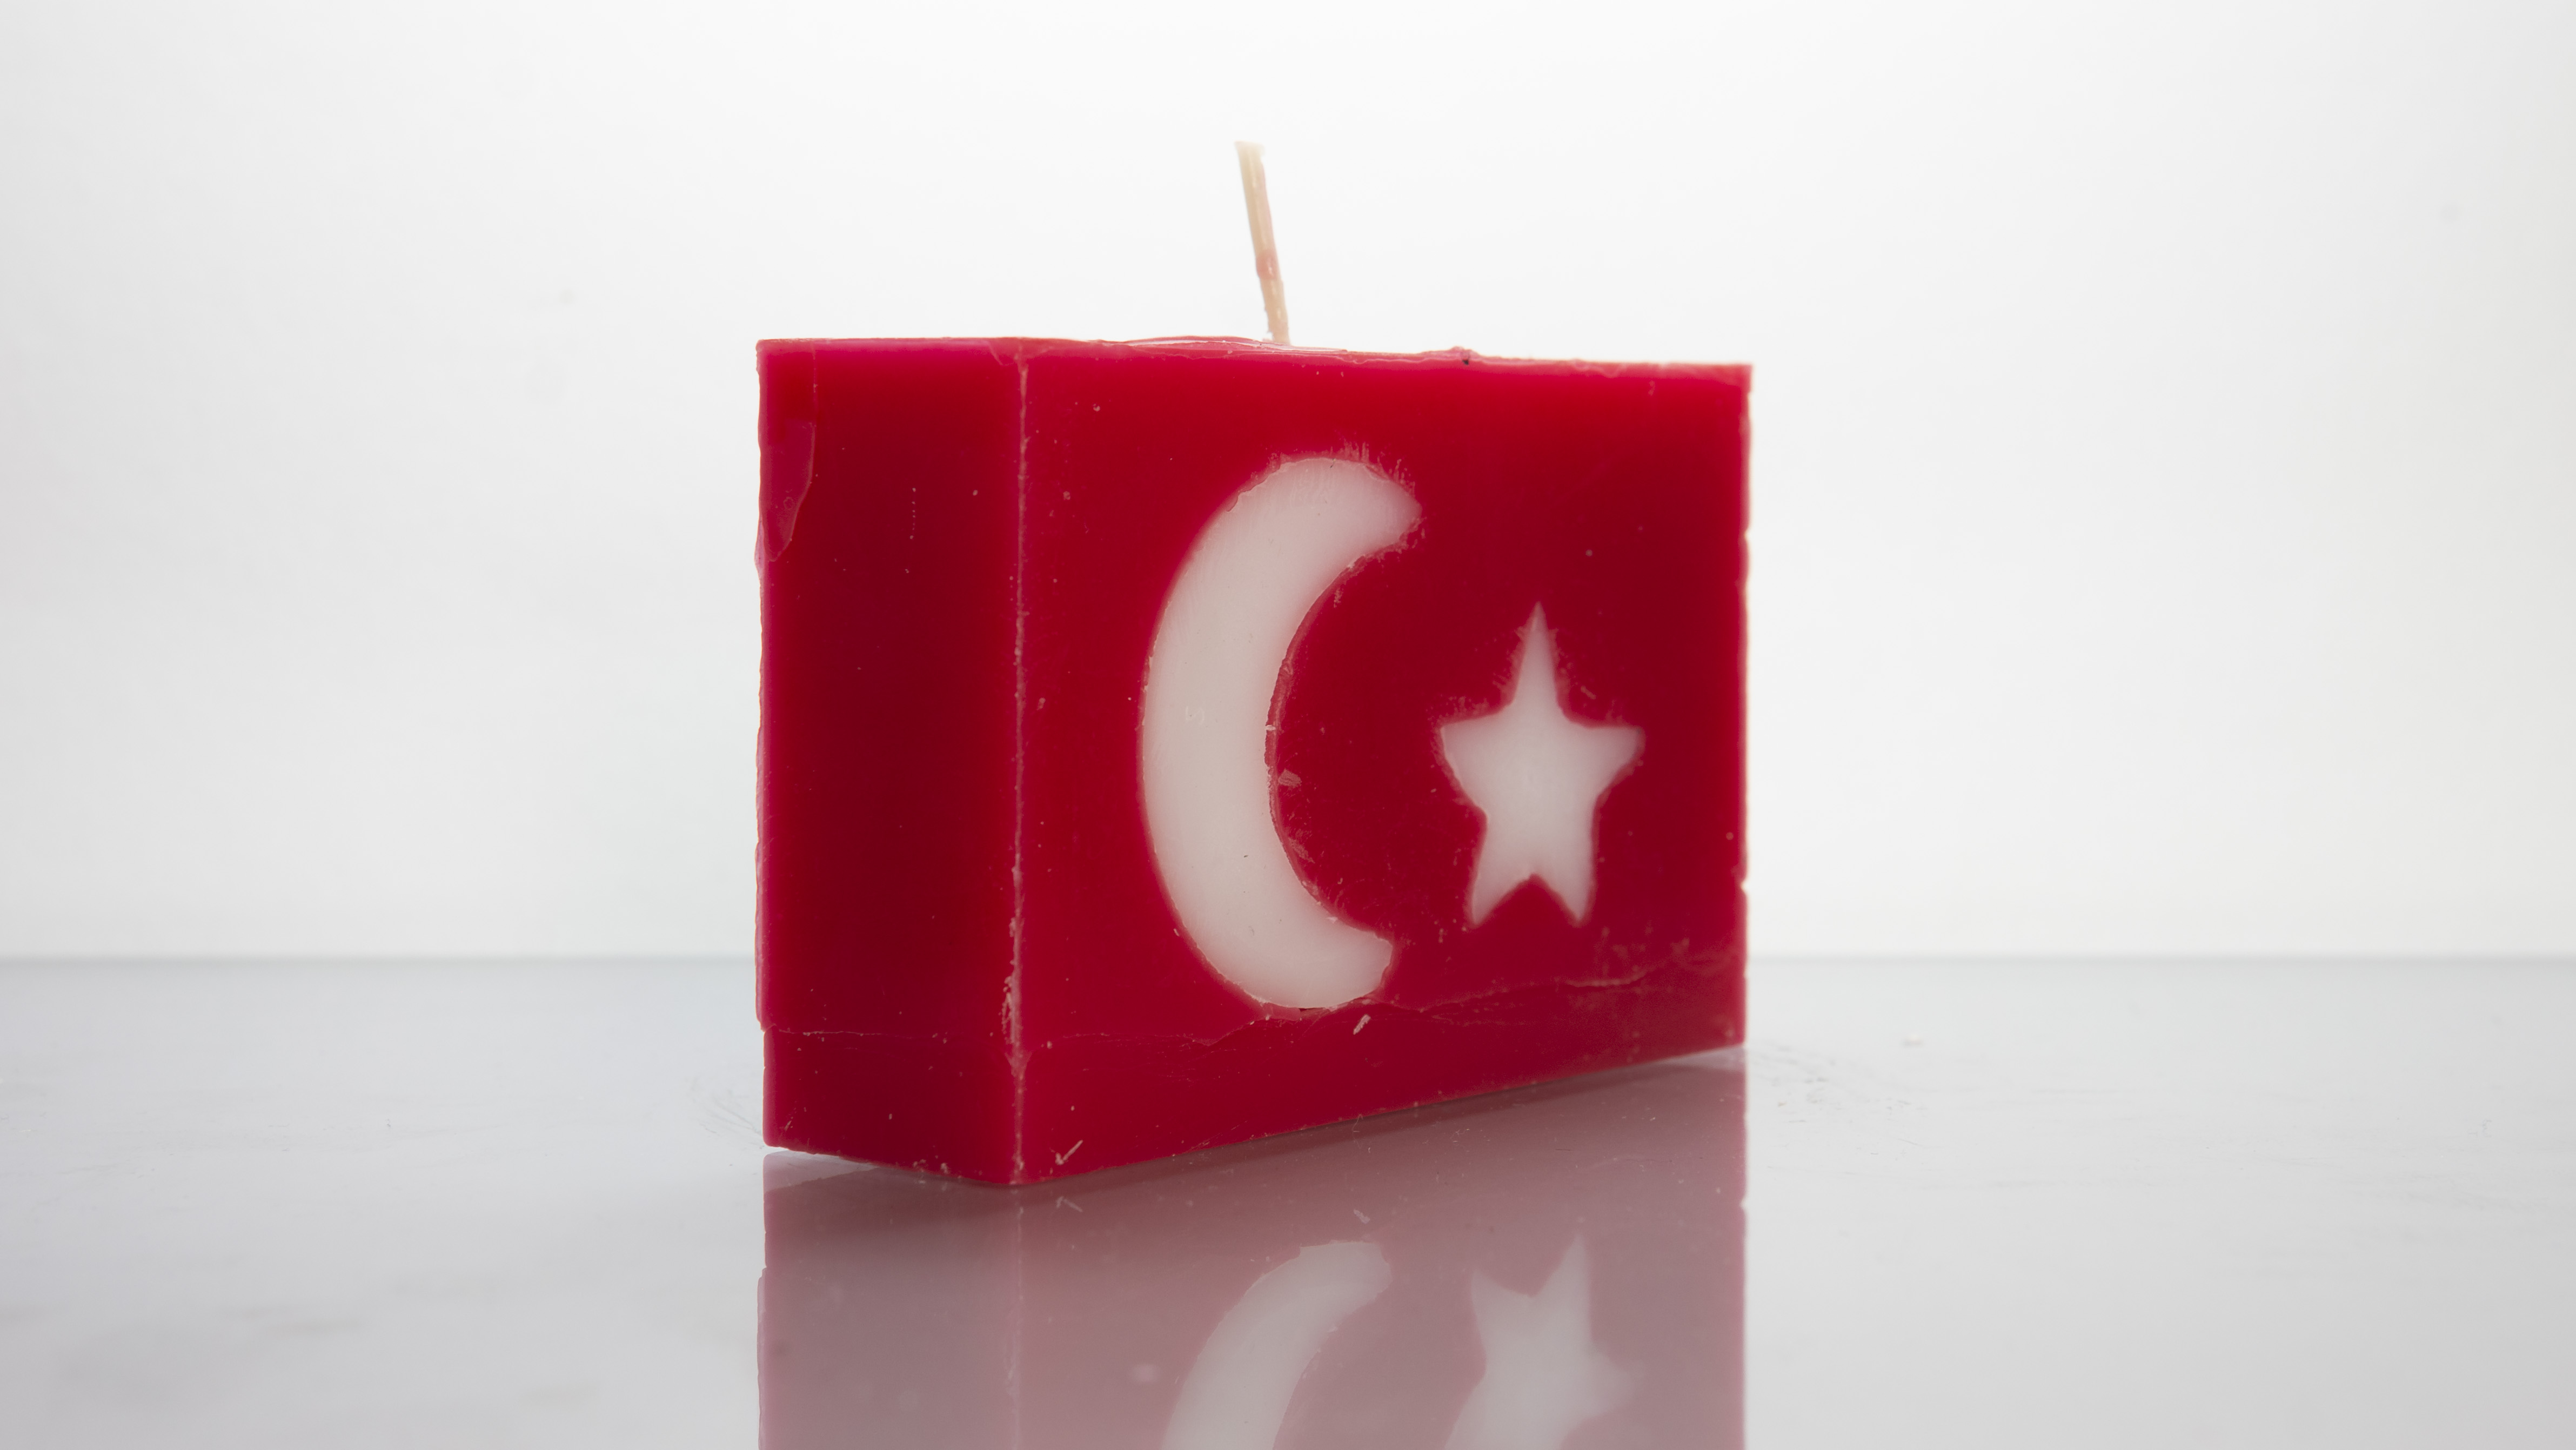 burn-a-flag: Turkey